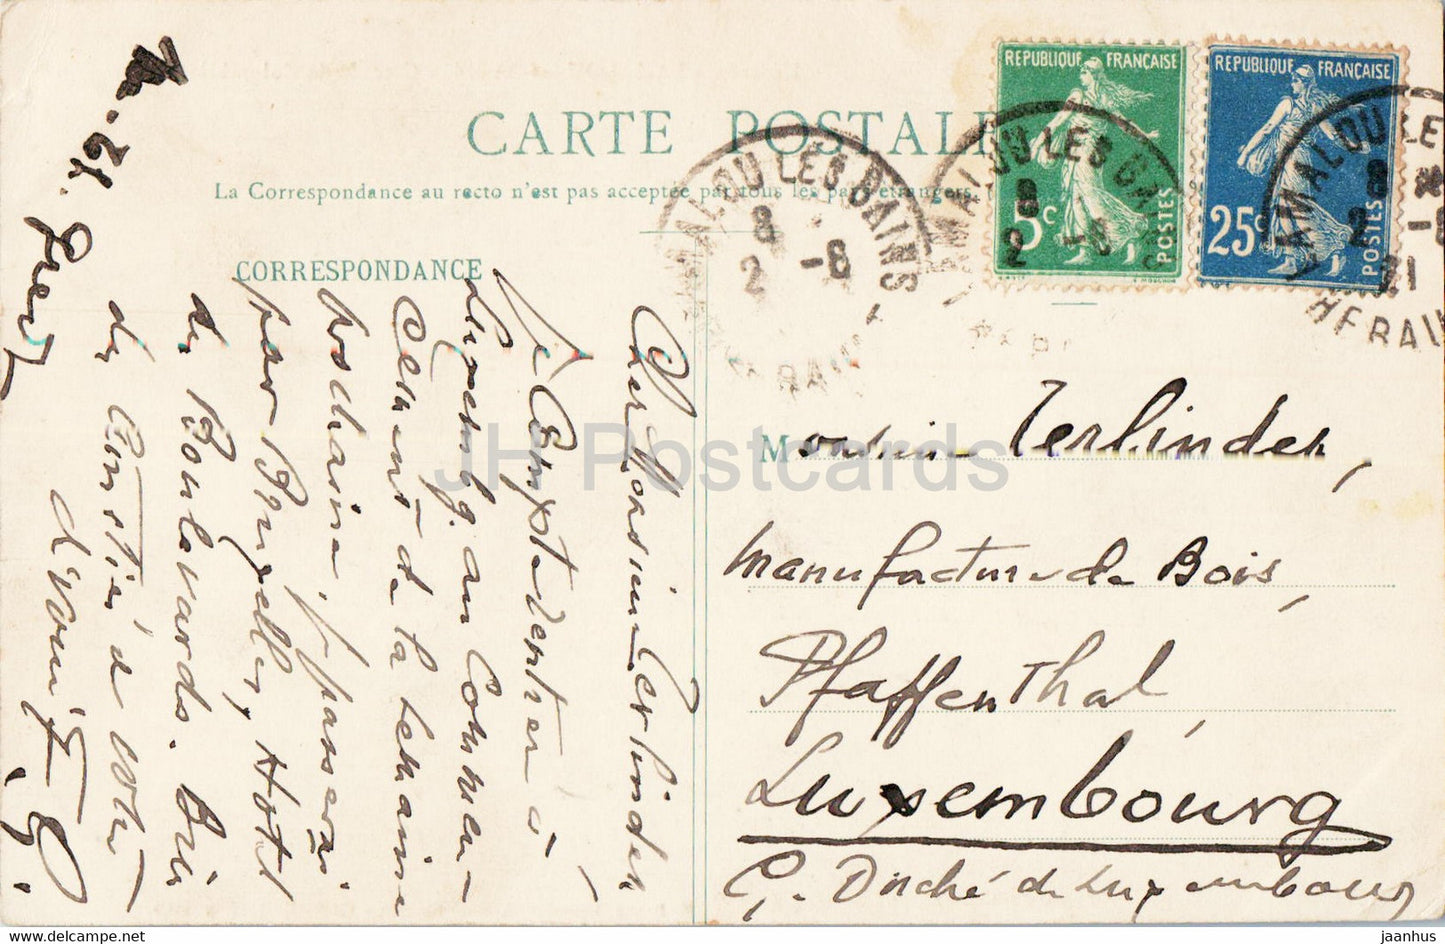 Lamalou les Bains - Cascade de Colombieres - old postcard - 1921 - France - used